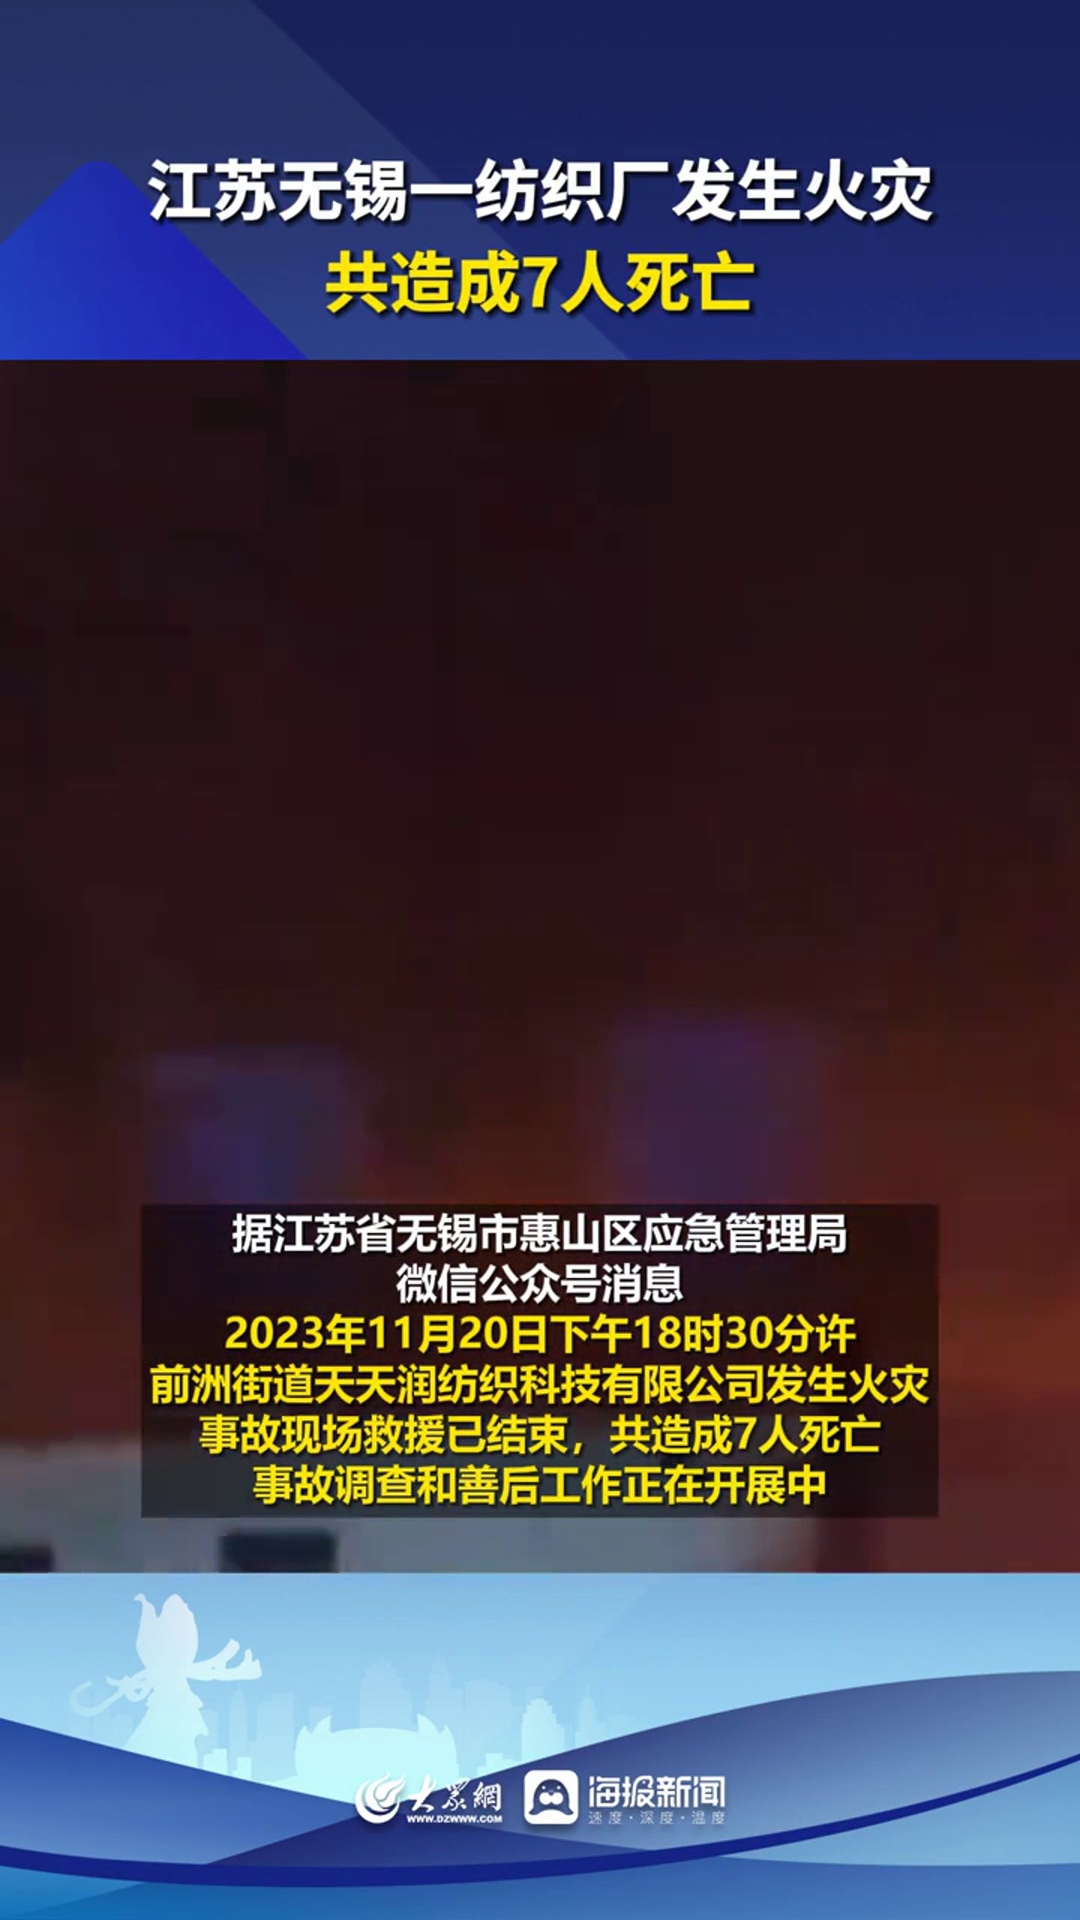 江苏无锡一纺织厂发生火灾,共造成7人死亡 热点新闻事件 你怎么看